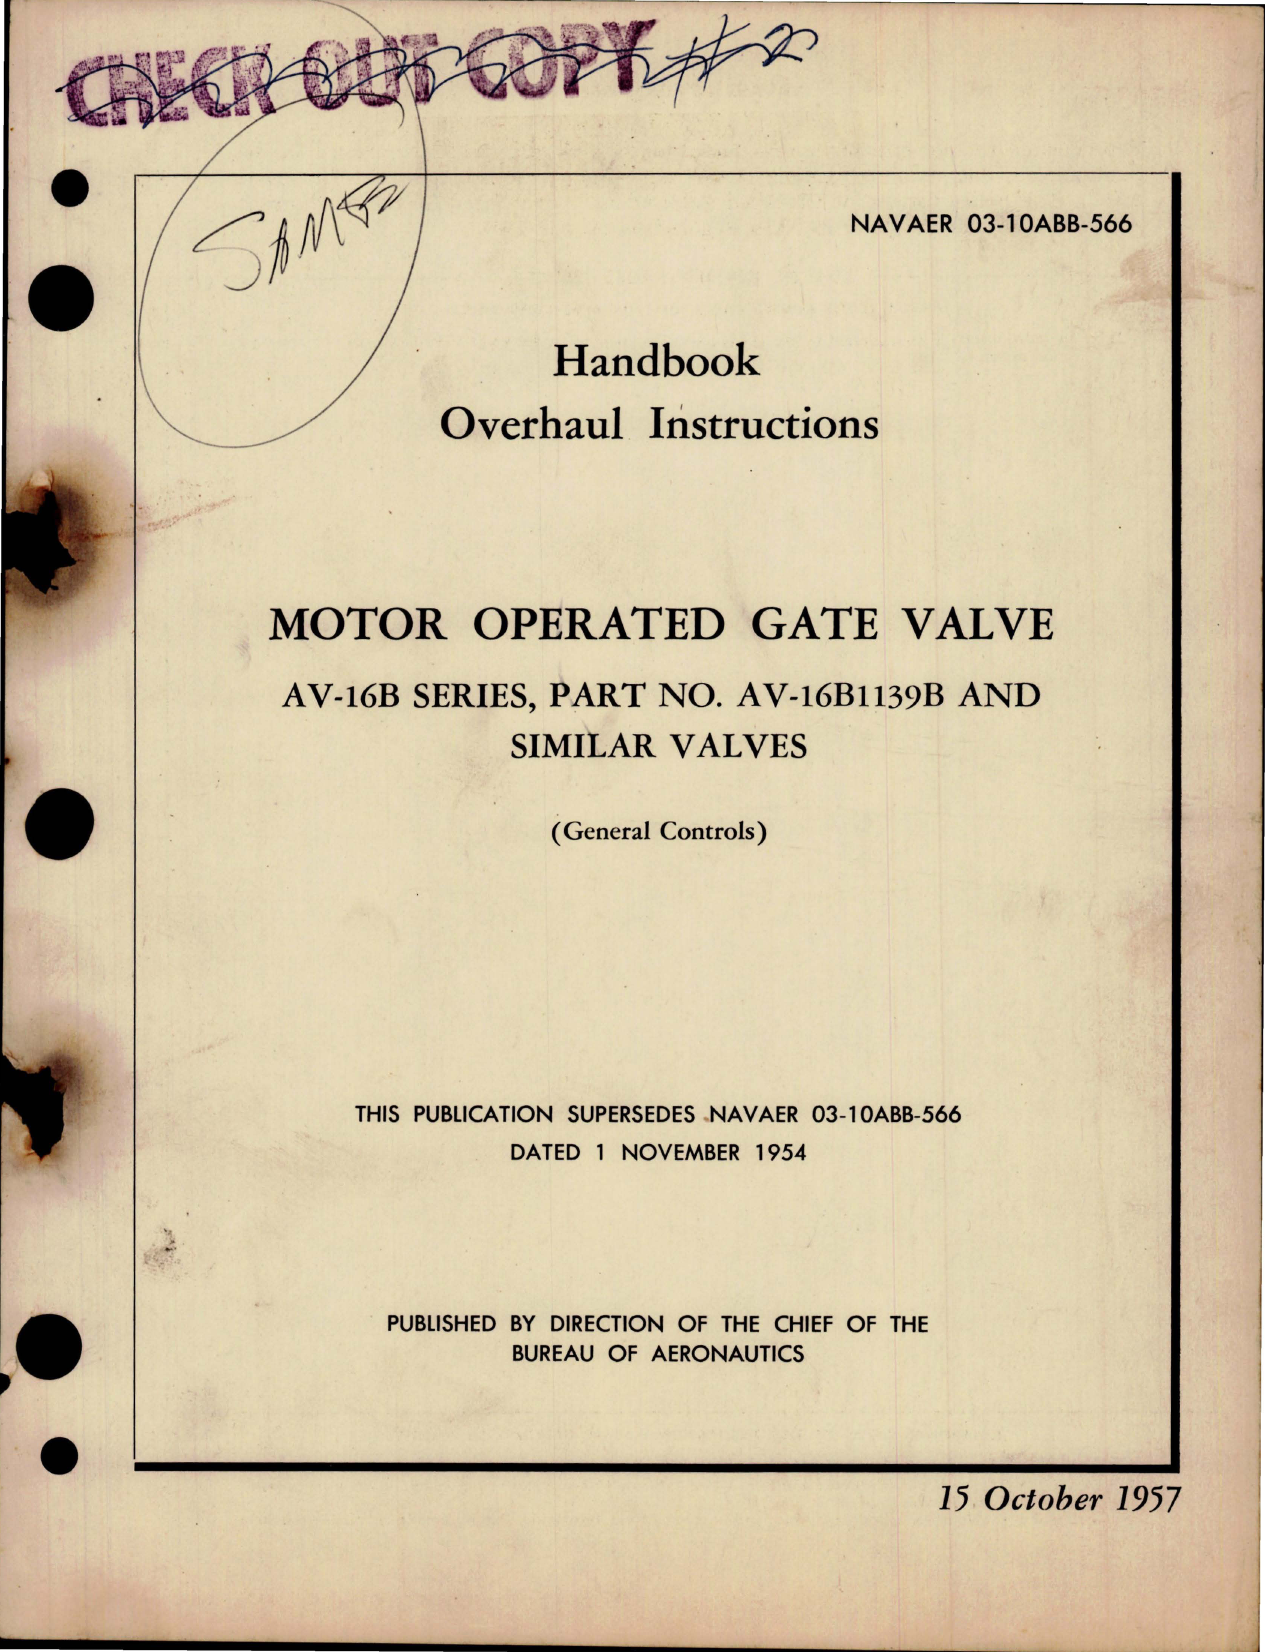 Sample page 1 from AirCorps Library document: Overhaul Instructions for Motor Operated Gate Valve - AV-16B Series - Part AV-16B1139B and Similar Valves